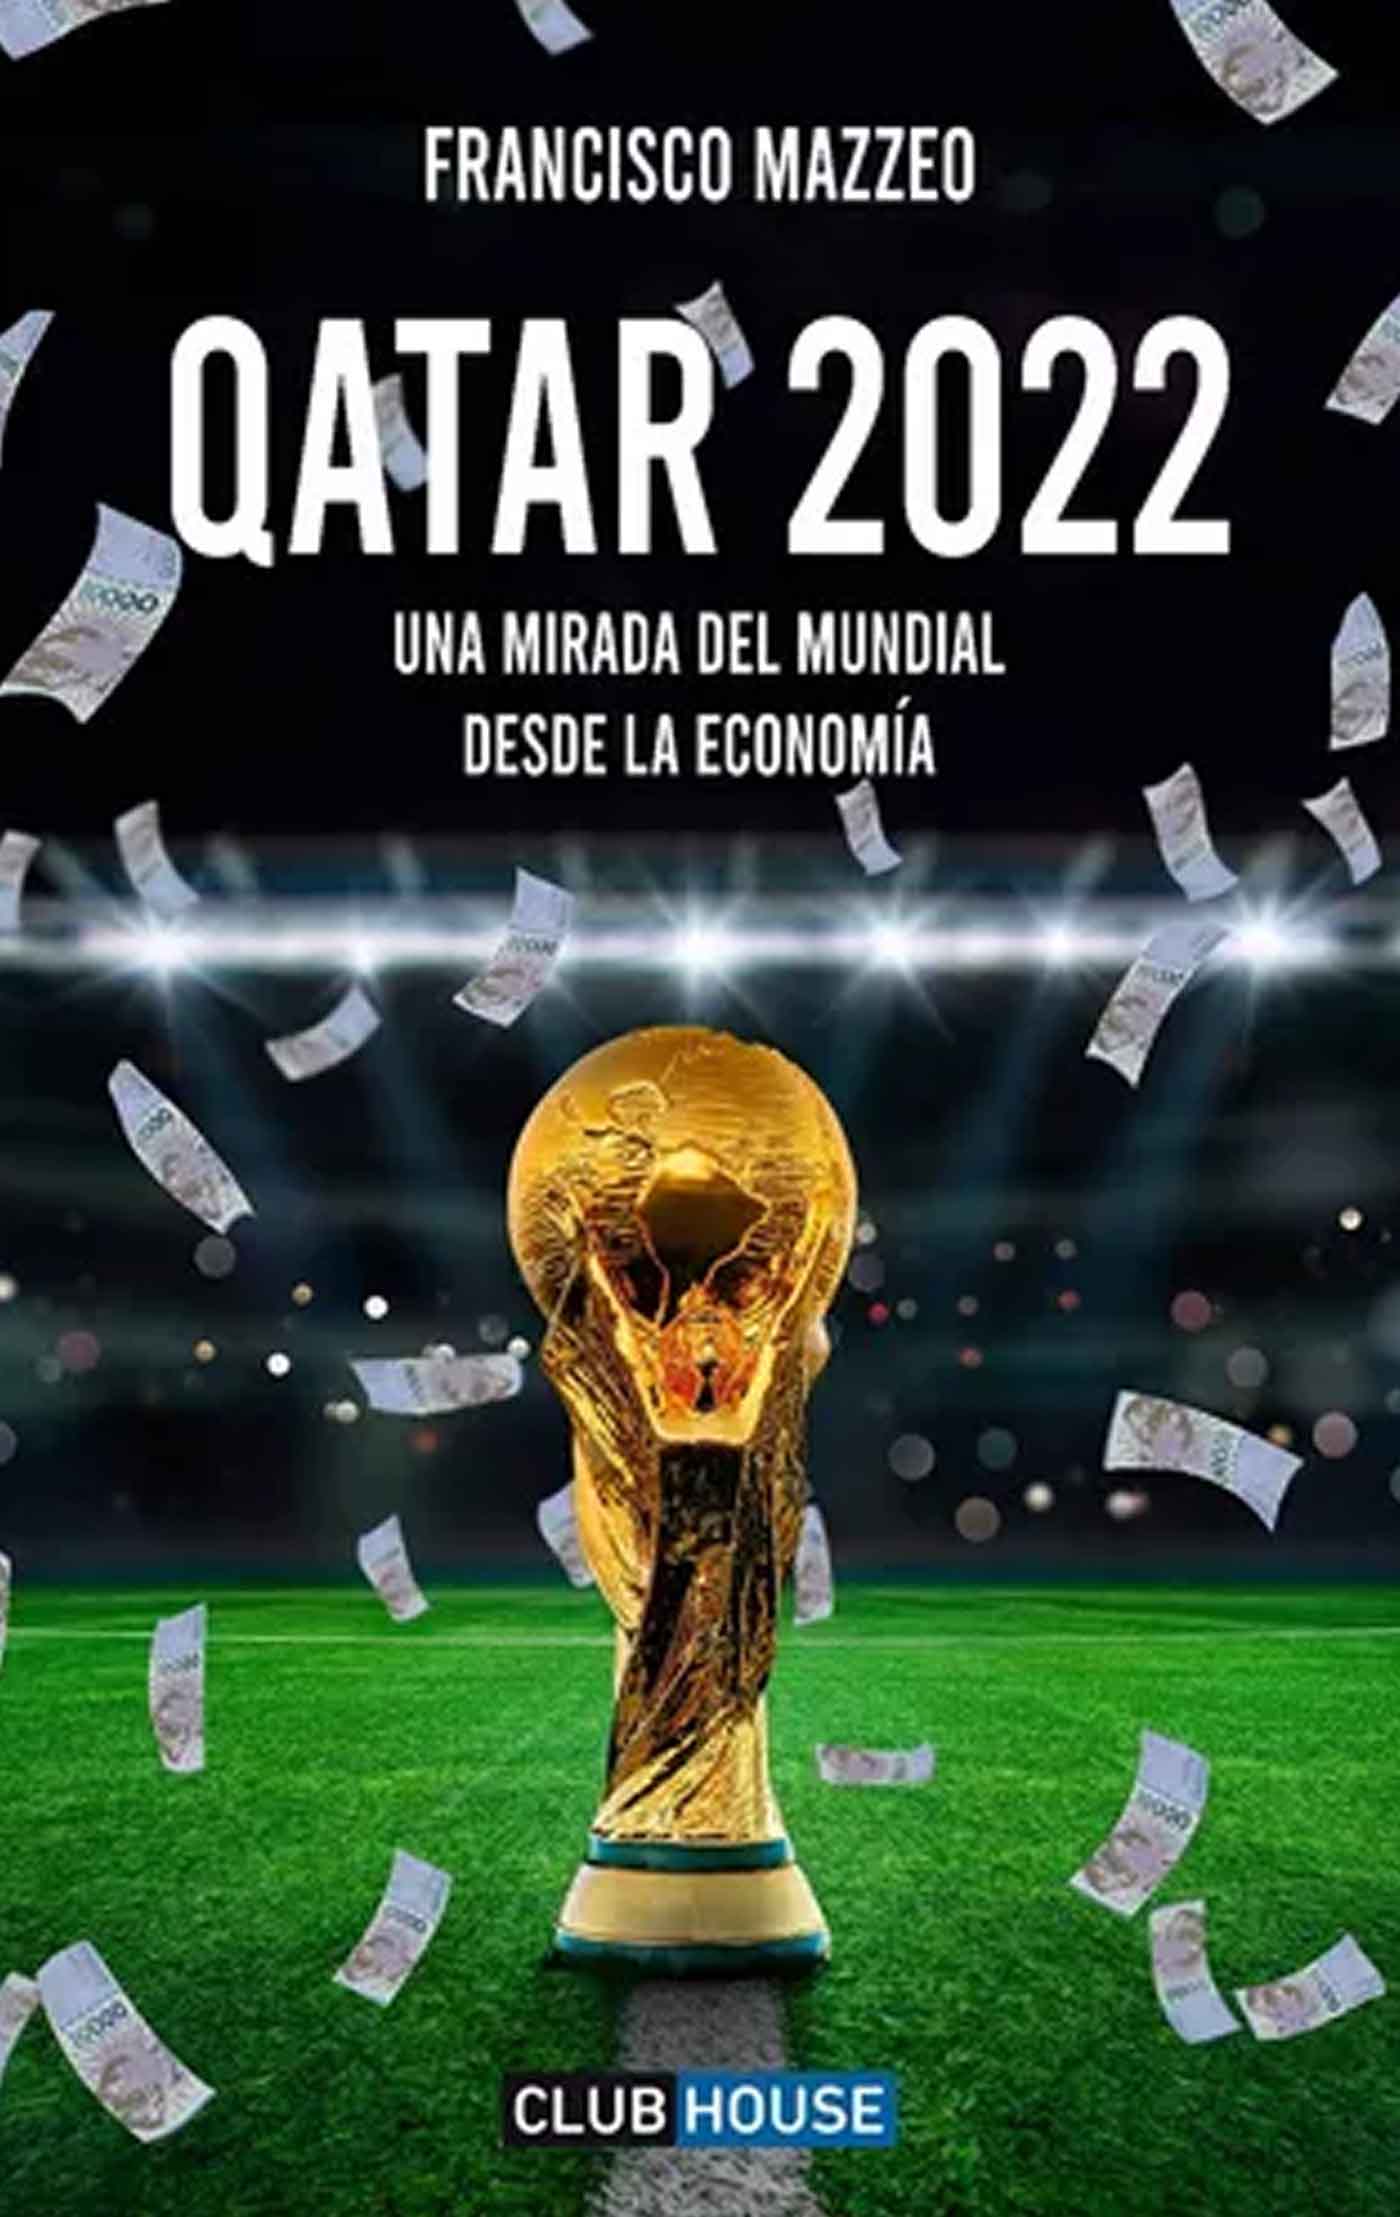 Qatar 2022 Francisco Mazzeo